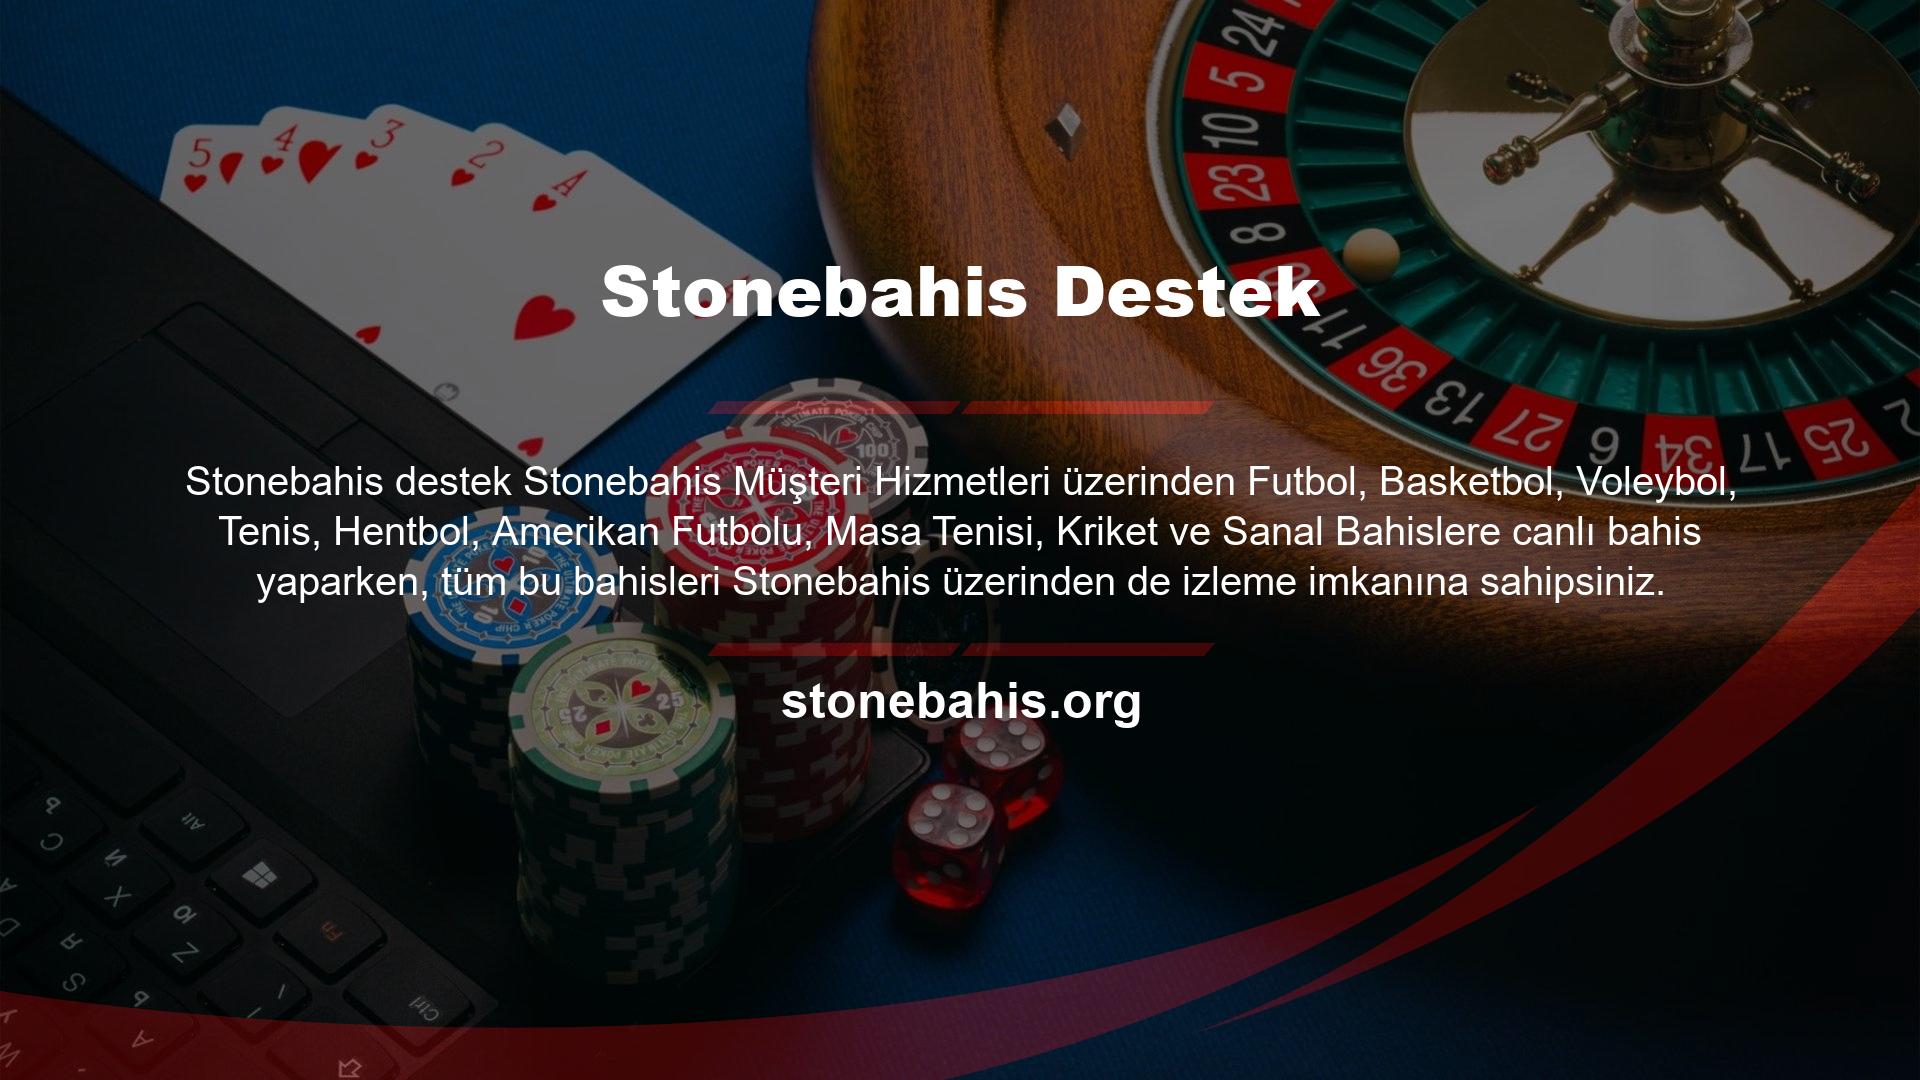 Stonebahis Bahis ayrıca müşterileri e-posta, telefon ve sosyal medya hesapları aracılığıyla ödüllendirir